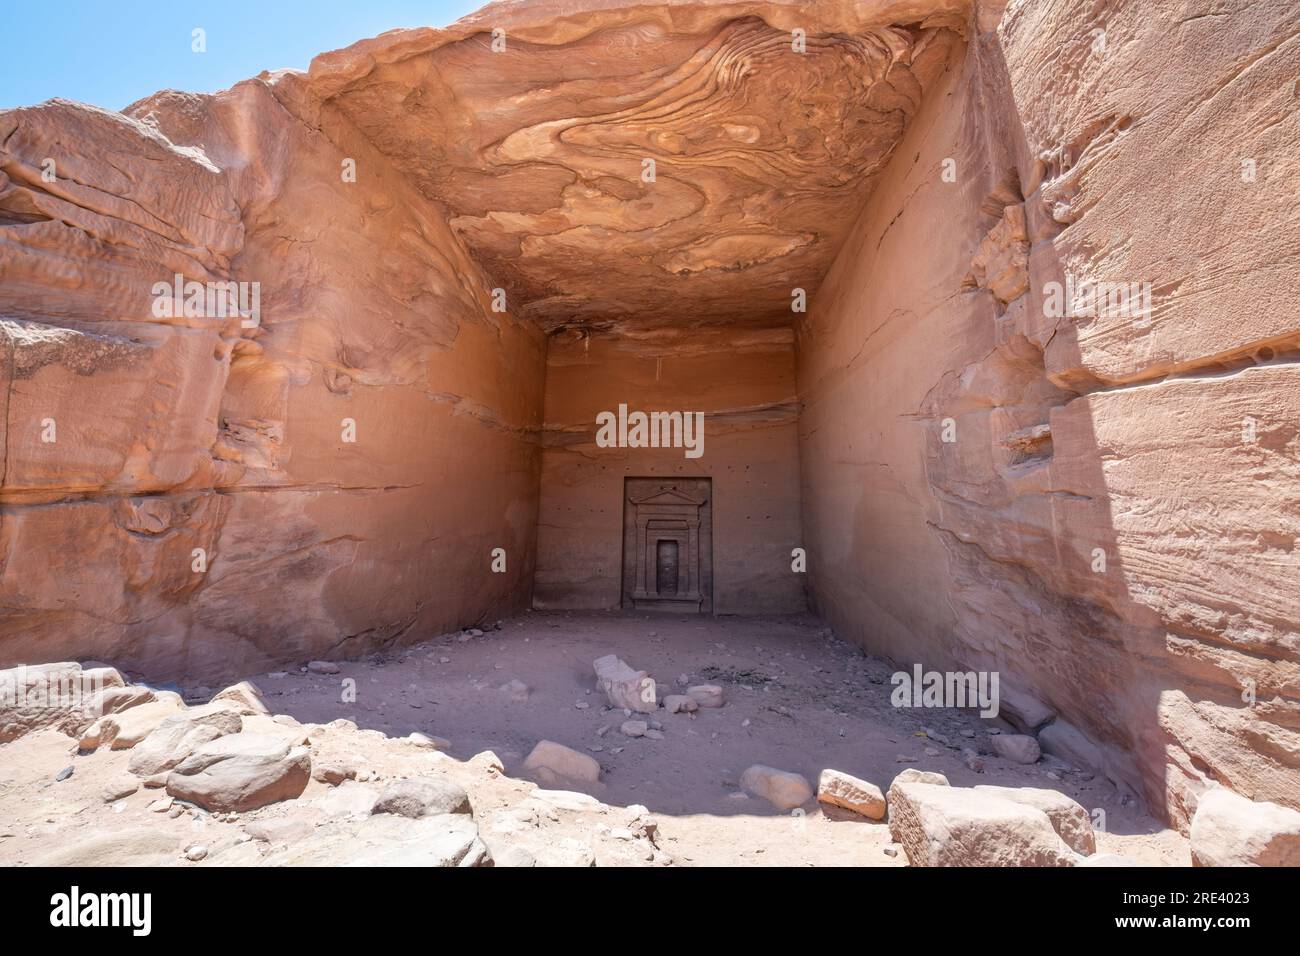 Wadi Musa, Petra, Jordan - An interior of one of the hundreds of rock cut out tombs in Petra, Jordan. Stock Photo